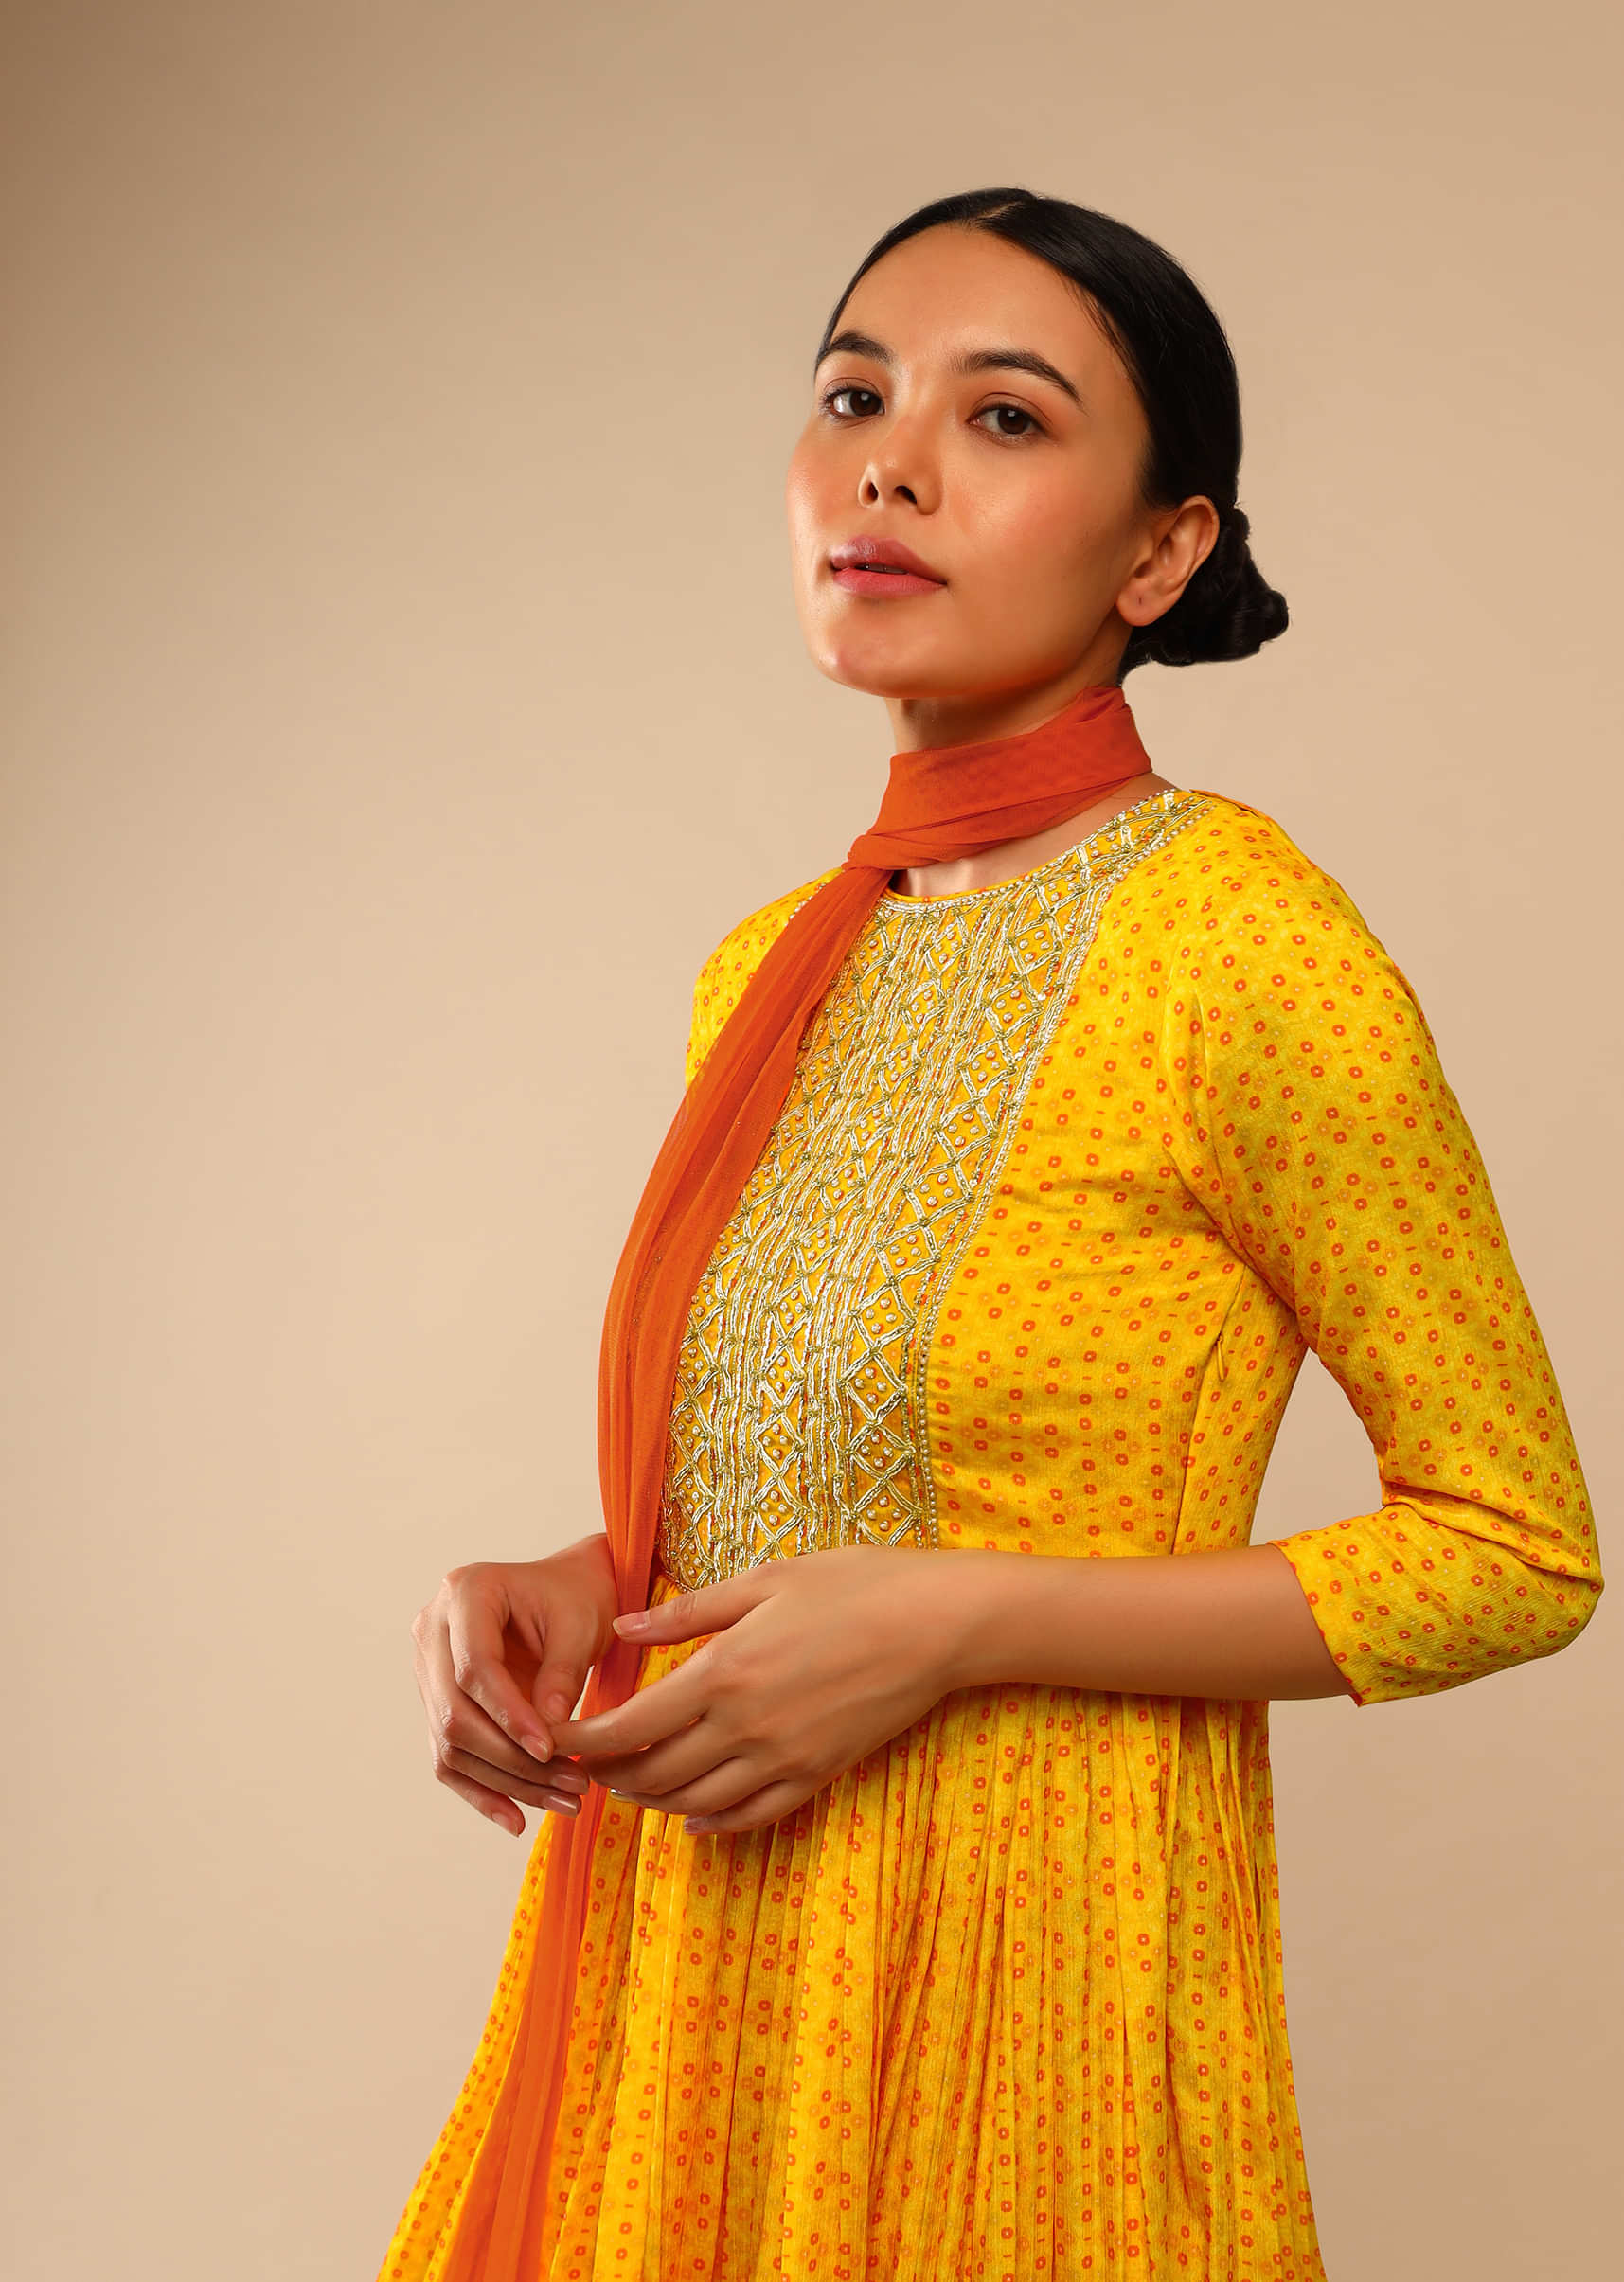 Honey Yellow Sharara Suit In Crepe With Bandhani And Lehariya Print Paired With Moti Embroidered Peplum Kurti  